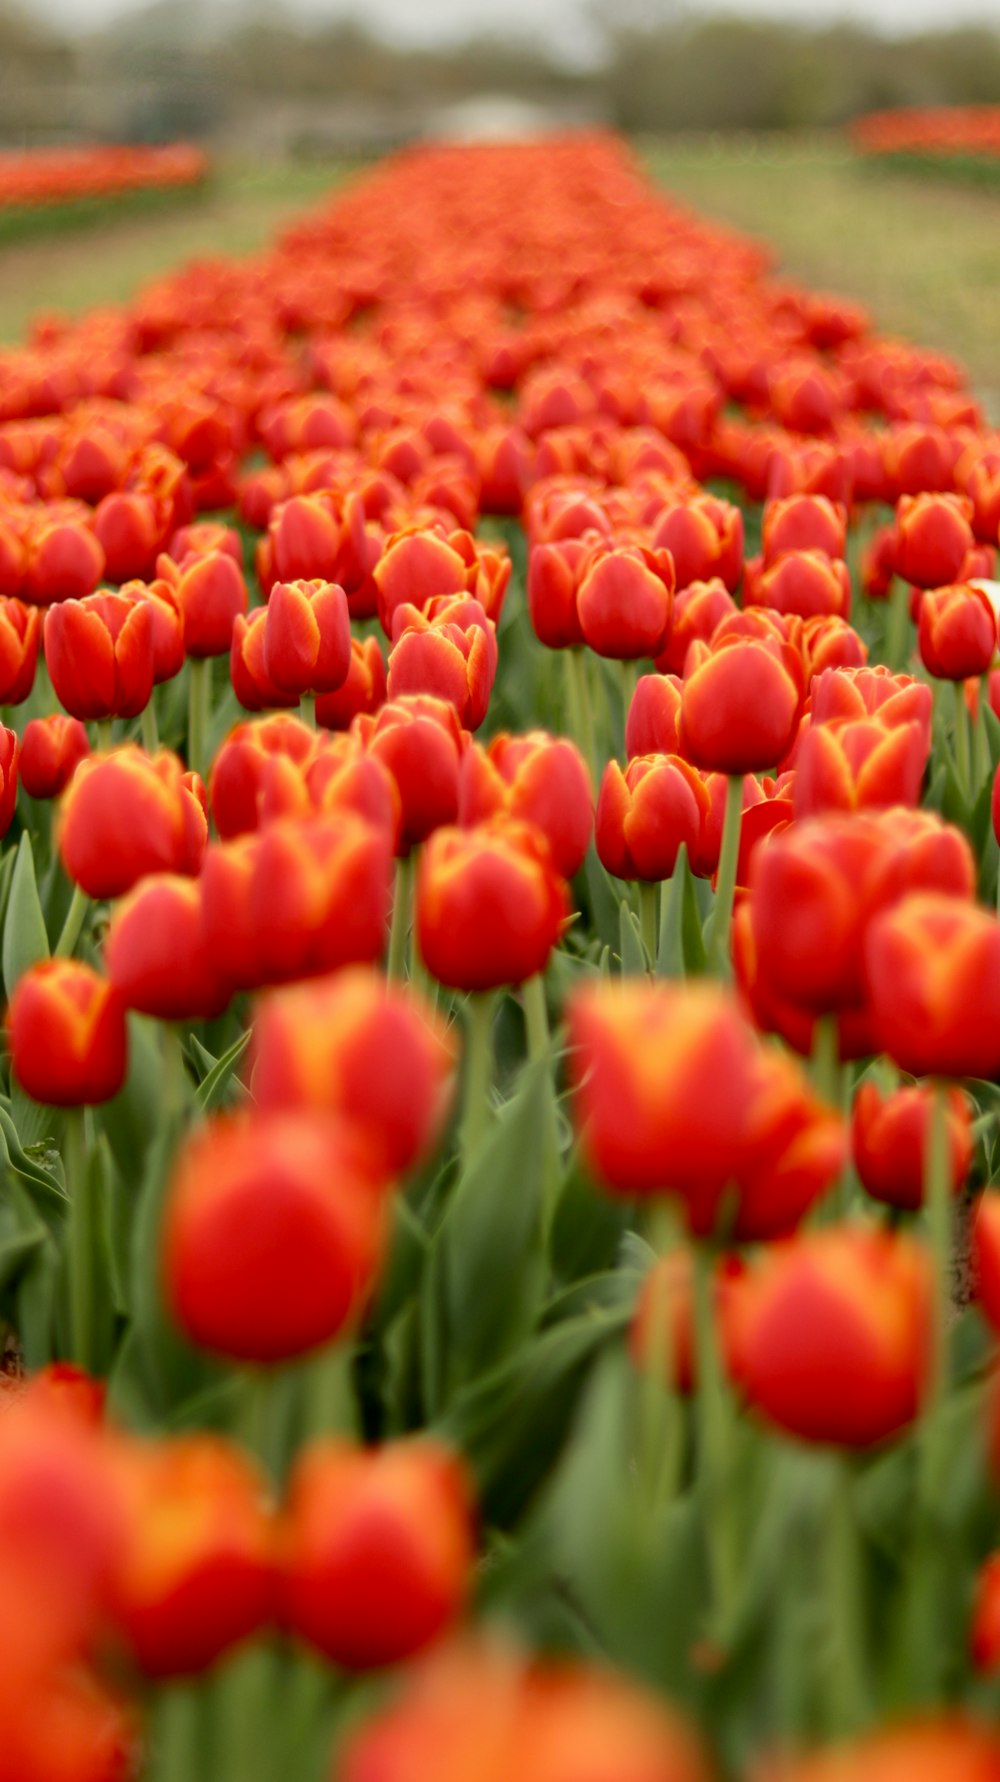 Un campo pieno di tulipani rossi e arancioni